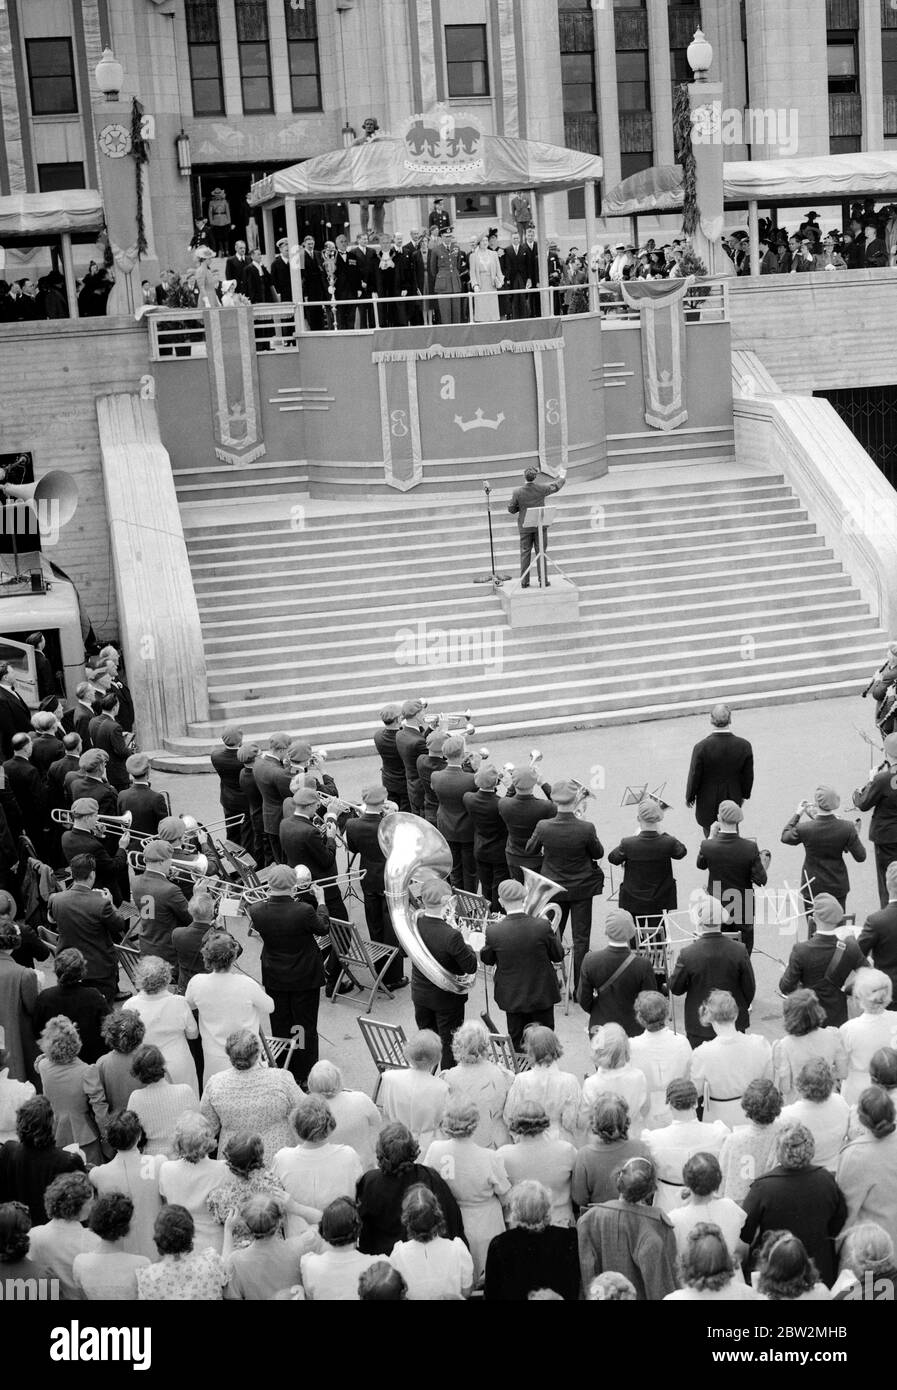 Die Königliche Tour durch Kanada und die USA von König George VI und Königin Elizabeth 1939 der König trägt Royal Air Force Uniform , Und die Königin auf den Stufen des Rathauses, Vancouver, während sie den Mitgliedern des riesigen Chors lauschen, der zu ihren Majestäten sang Stockfoto